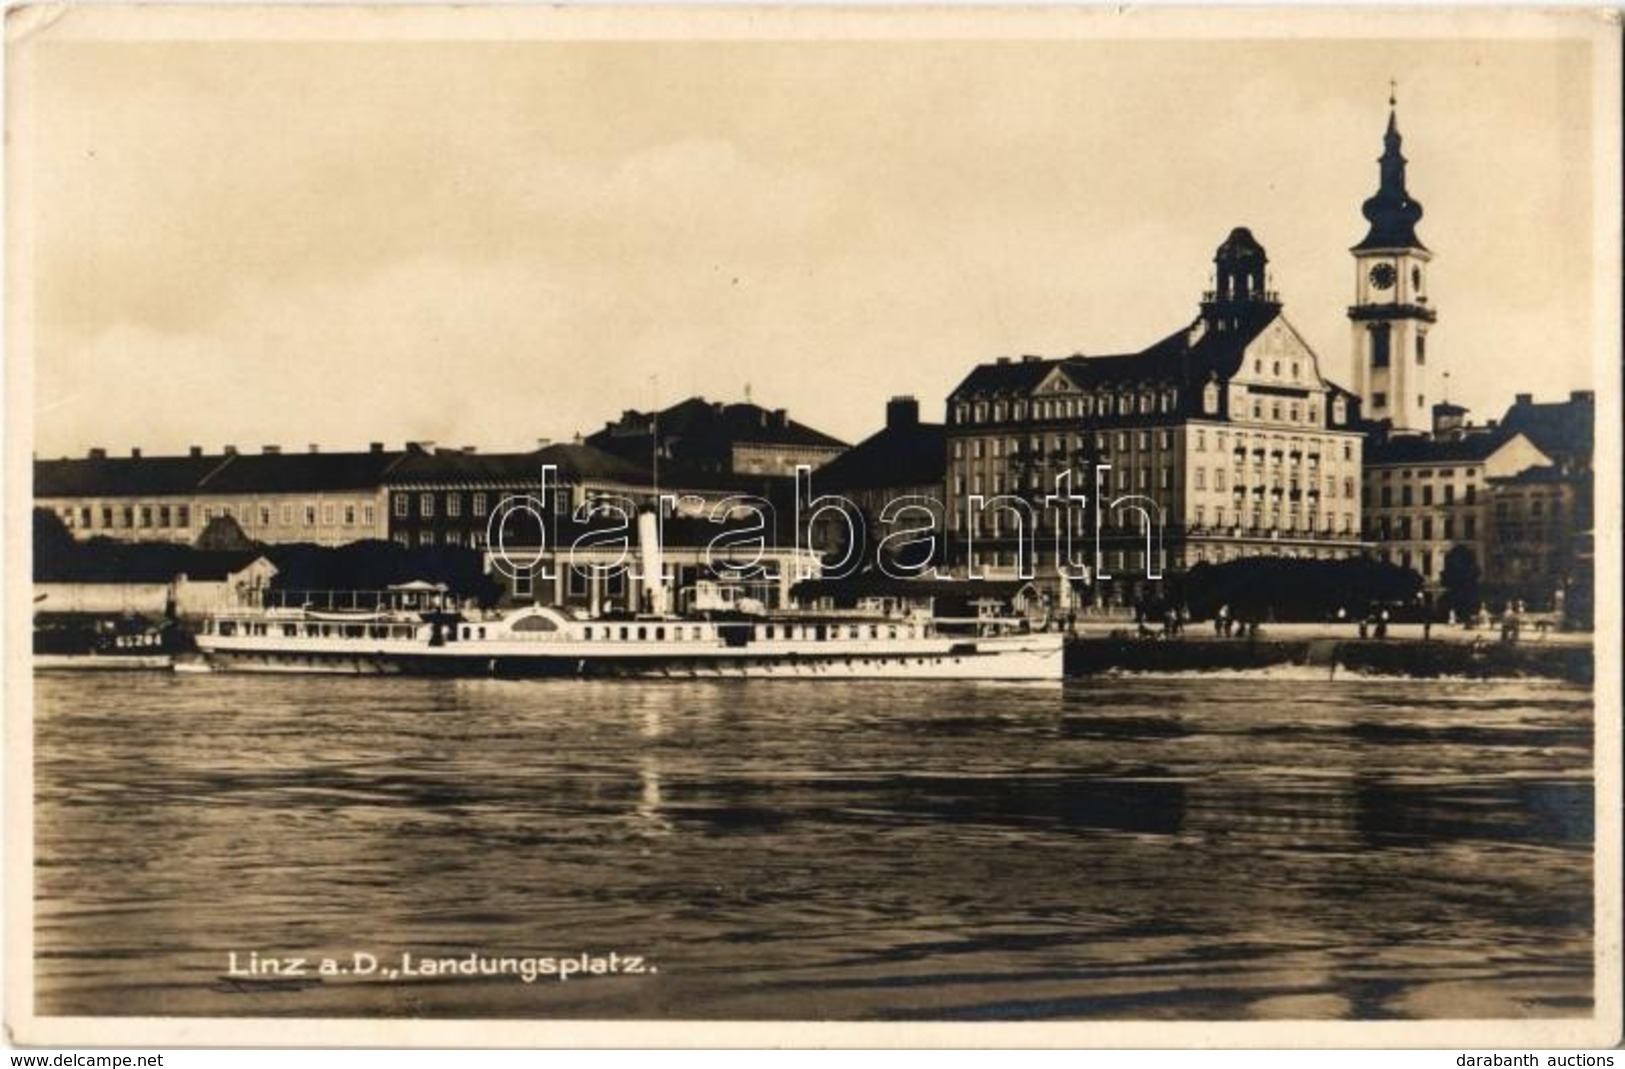 ** T2/T3 Linz A. D., Landungsplatz / Dock, Ship (EK) - Ohne Zuordnung